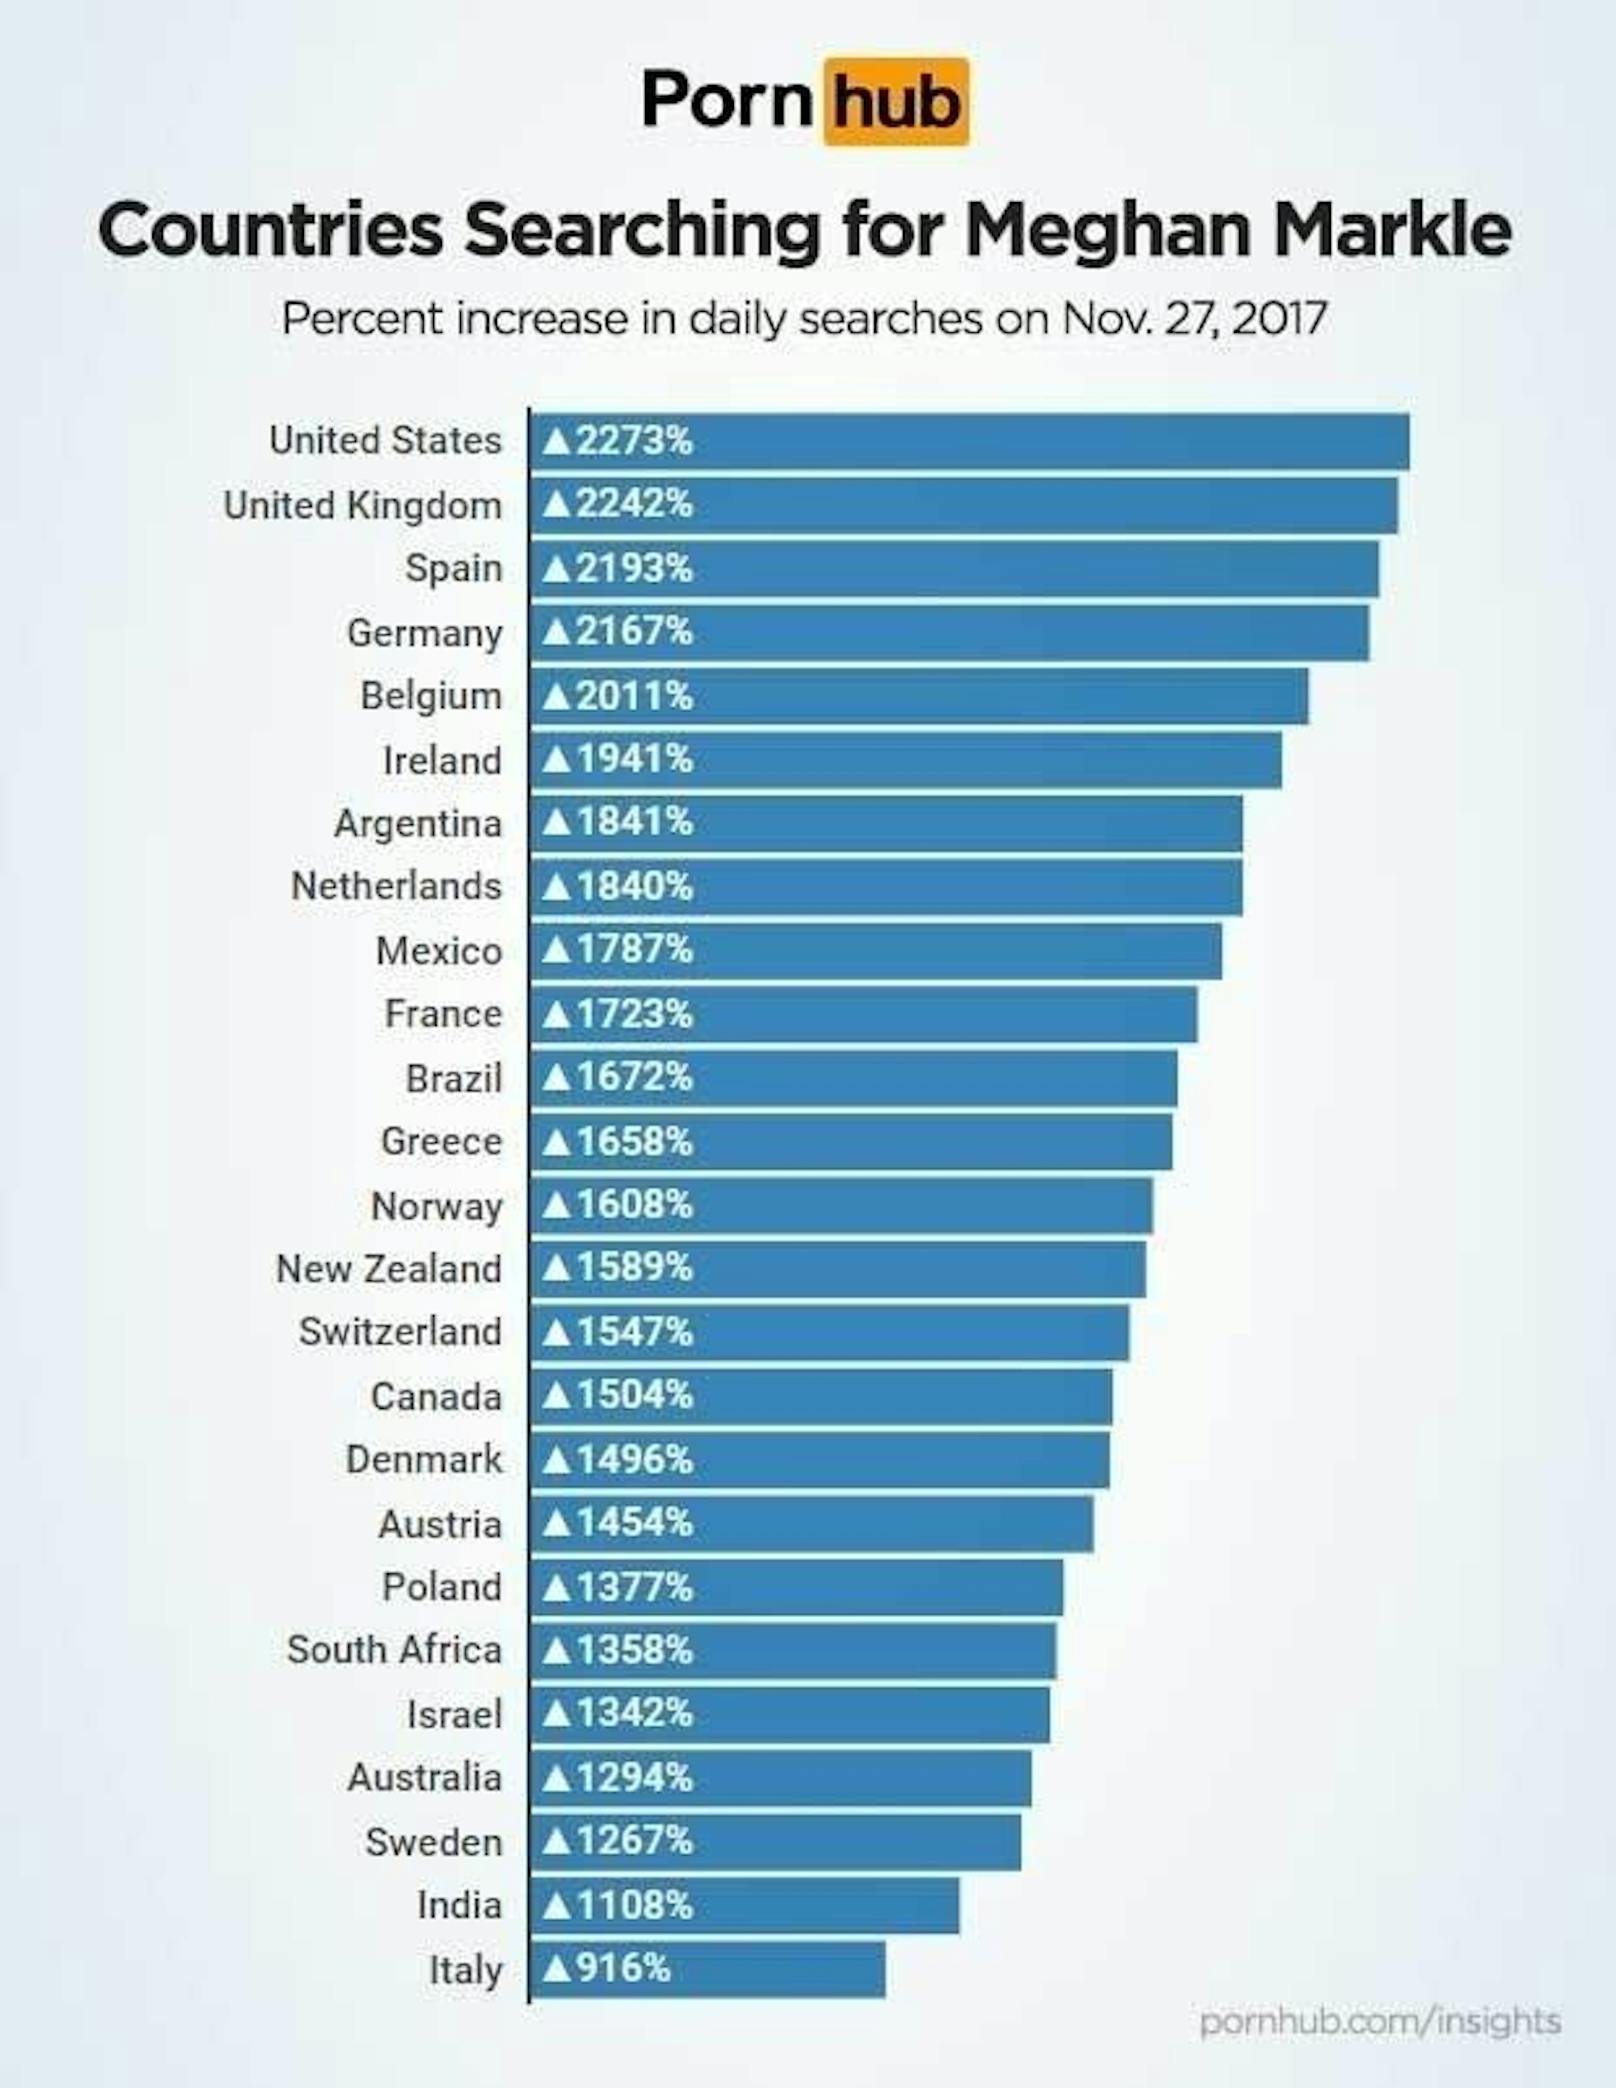 Die meisten Suchanfragen kamen aus den USA, Großbritannien, Spanien und Deutschland. Österreich befindet sich auf Platz 18.